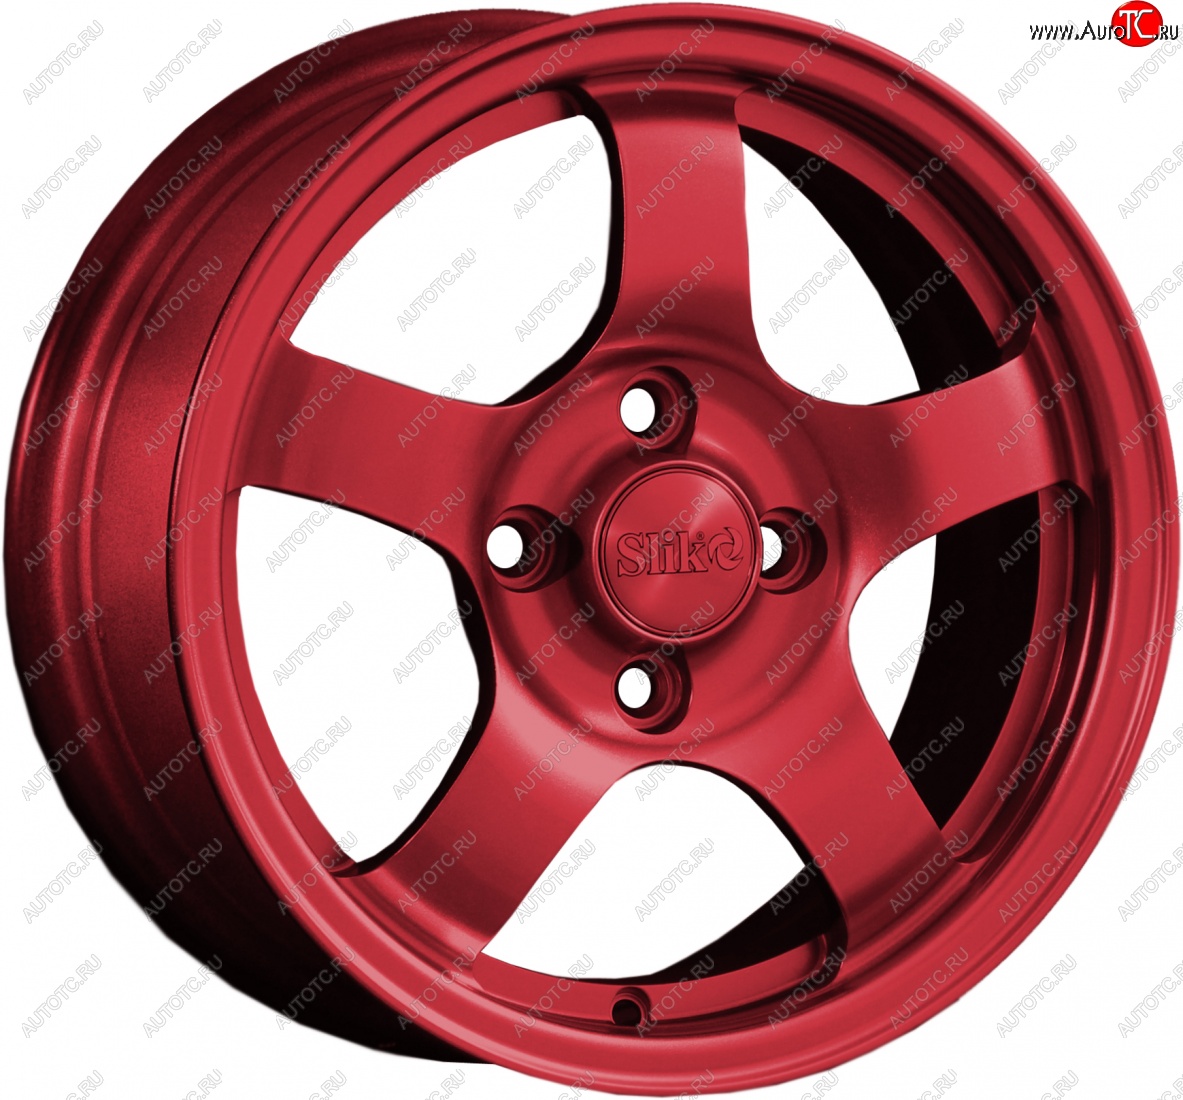 12 799 р. Кованый диск Slik Classik 6x14 (Красный RED) Nissan Bluebird Sylphy седан G10 рестайлинг (2003-2005) 4x114.3xDIA66.0xET35.0 (Цвет: Красный RED)